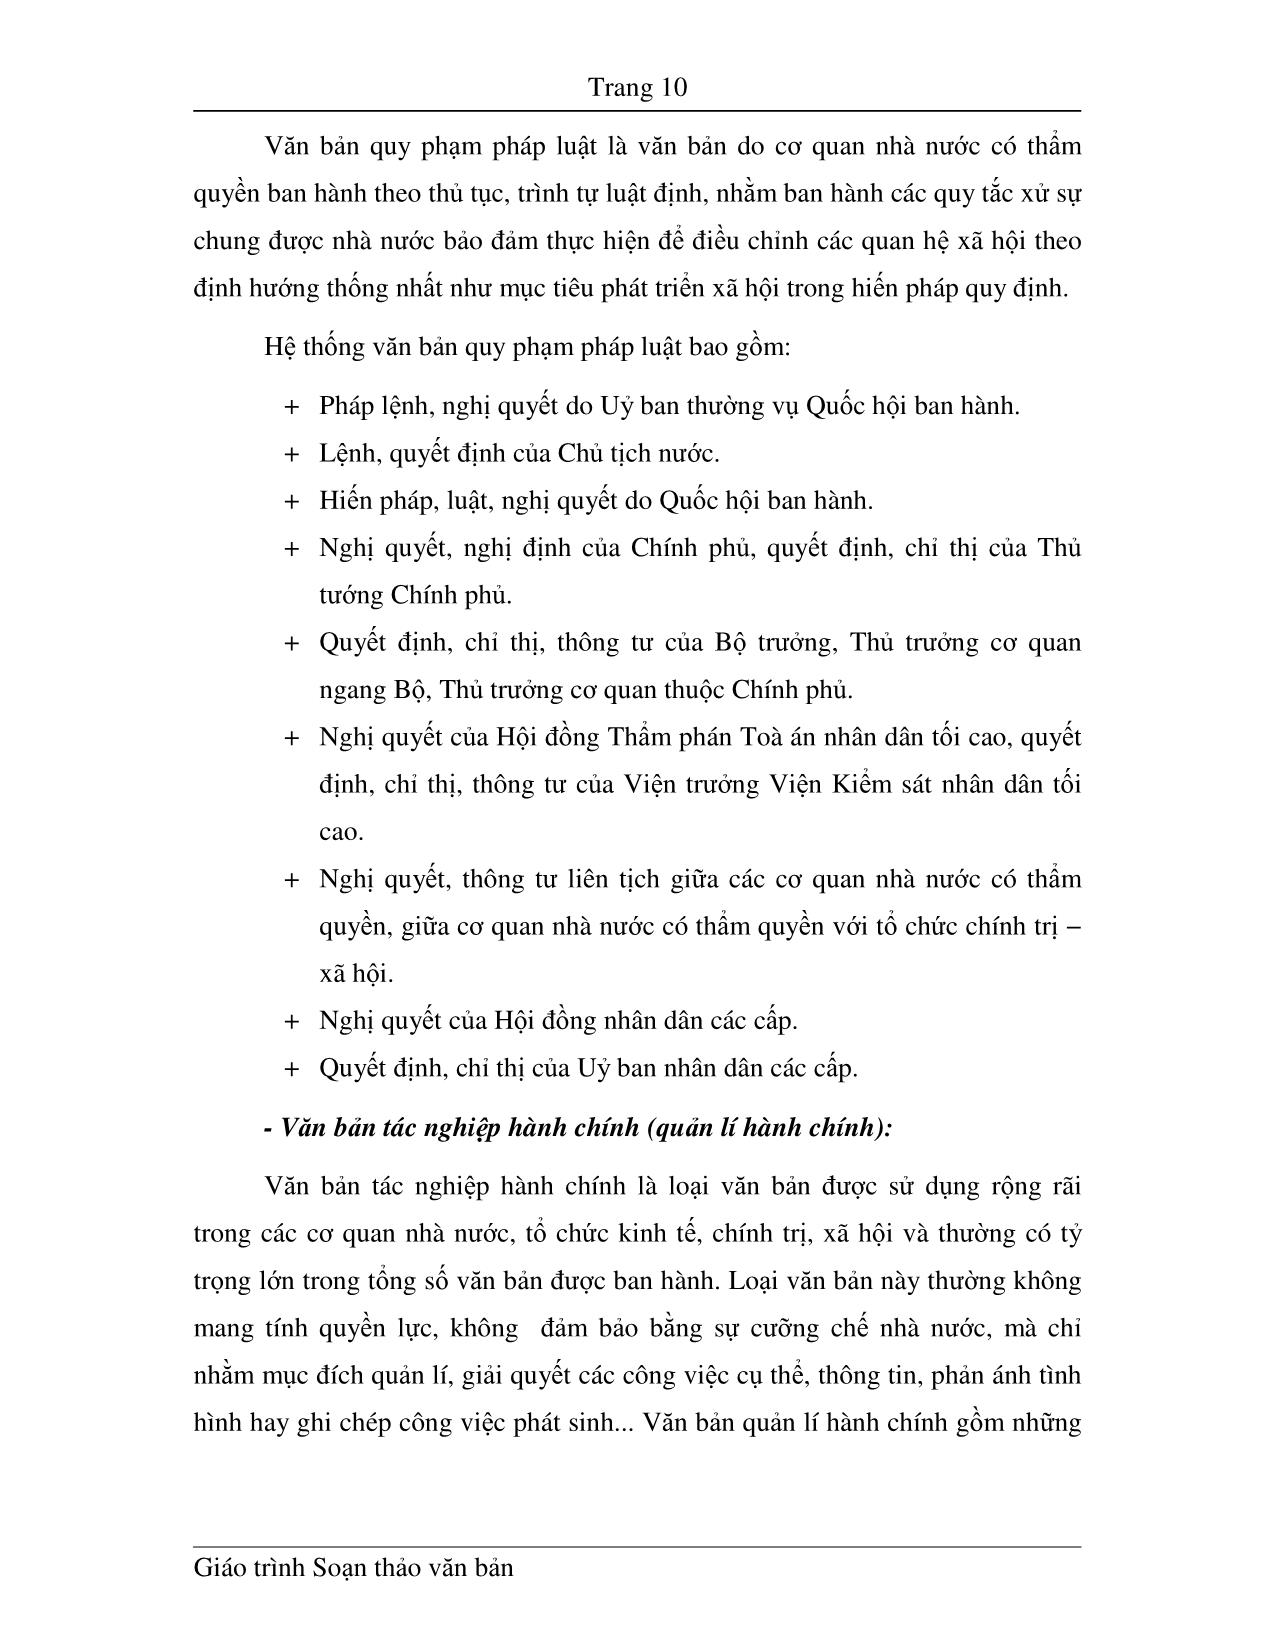 Giáo trình Soạn thảo văn bản (Phần 1) trang 10